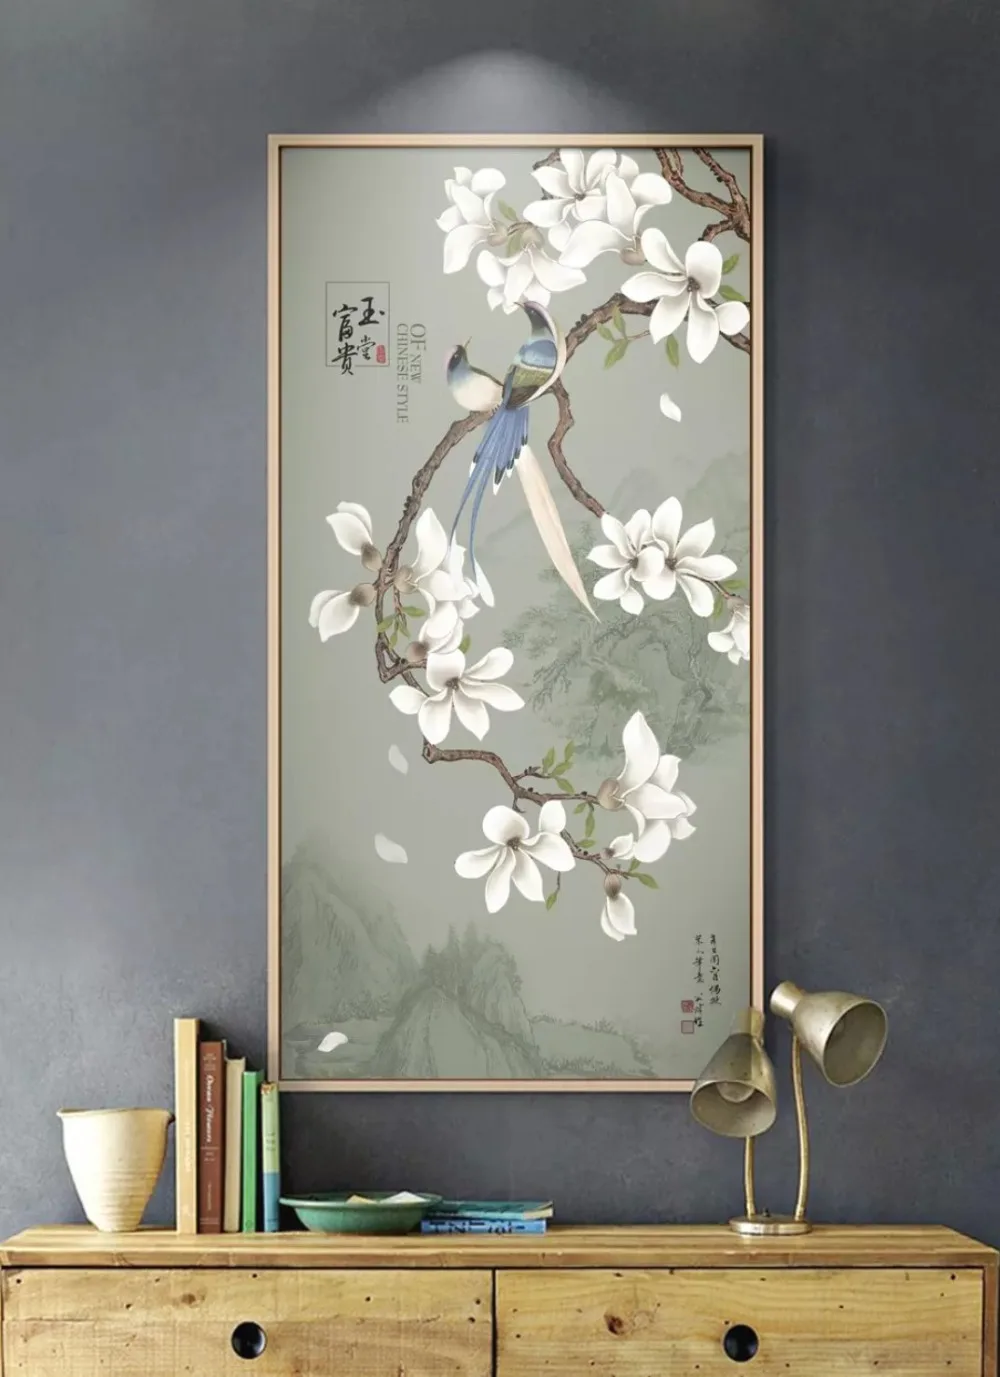 Beibehang пользовательские обои 3d Фото Фреска новые китайские чернила пейзаж цветок магнолии Птица Вход обои декоративная живопись